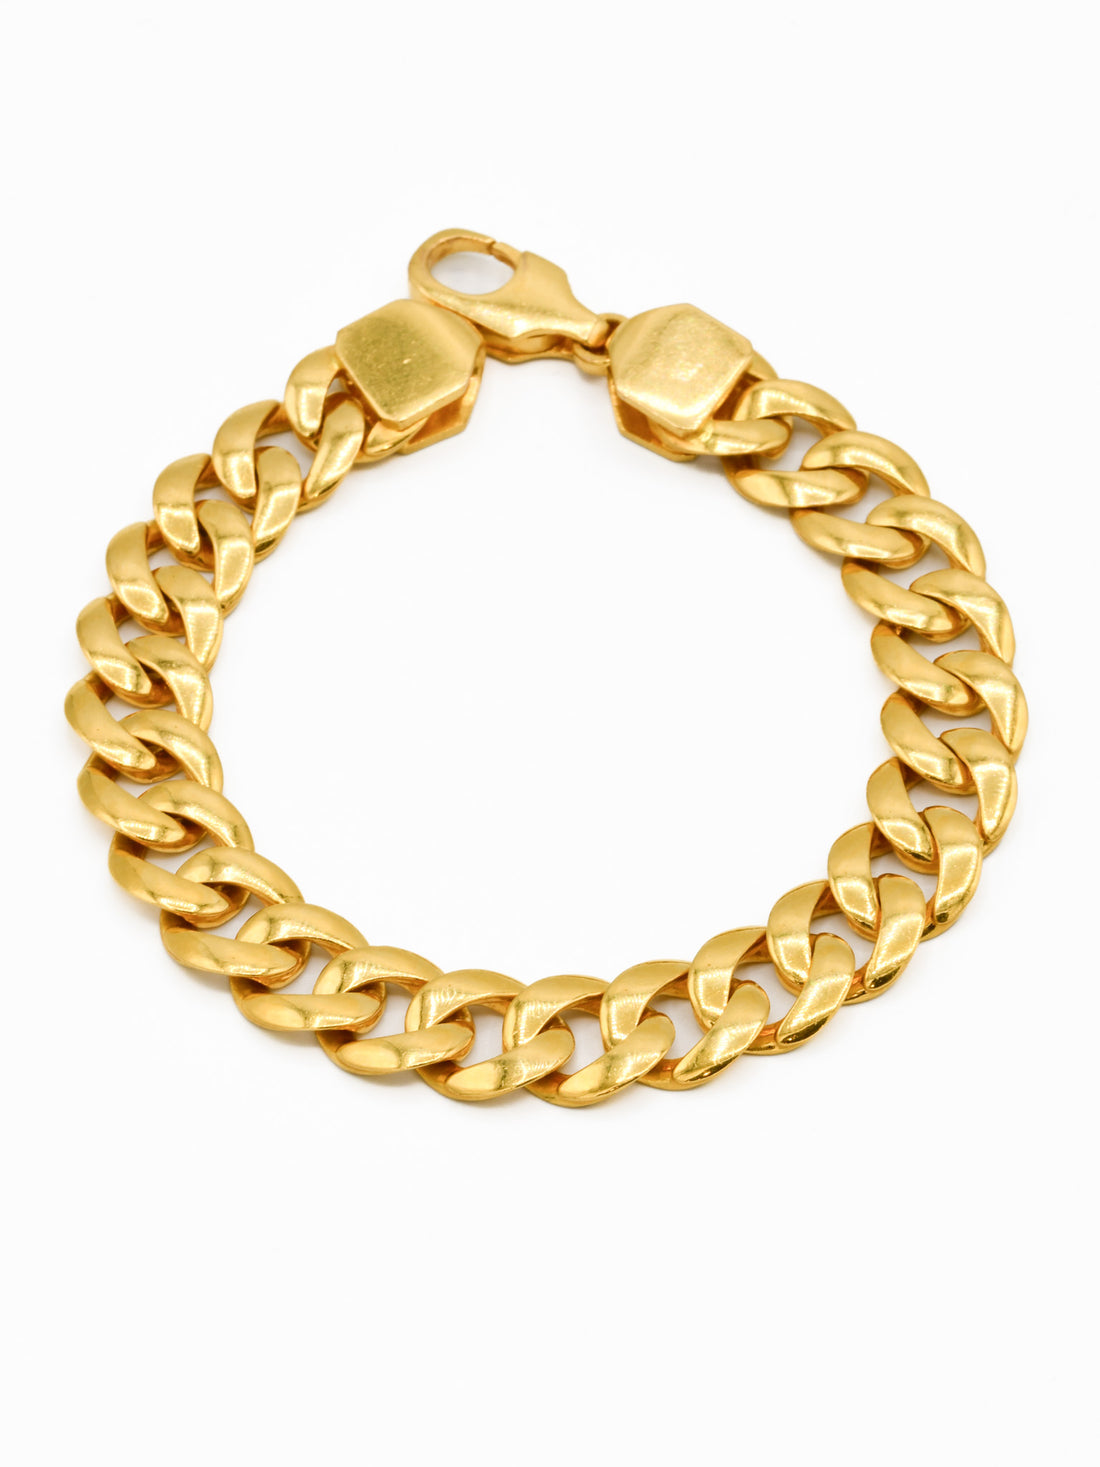 22ct Gold Curb Mens Bracelet - Roop Darshan